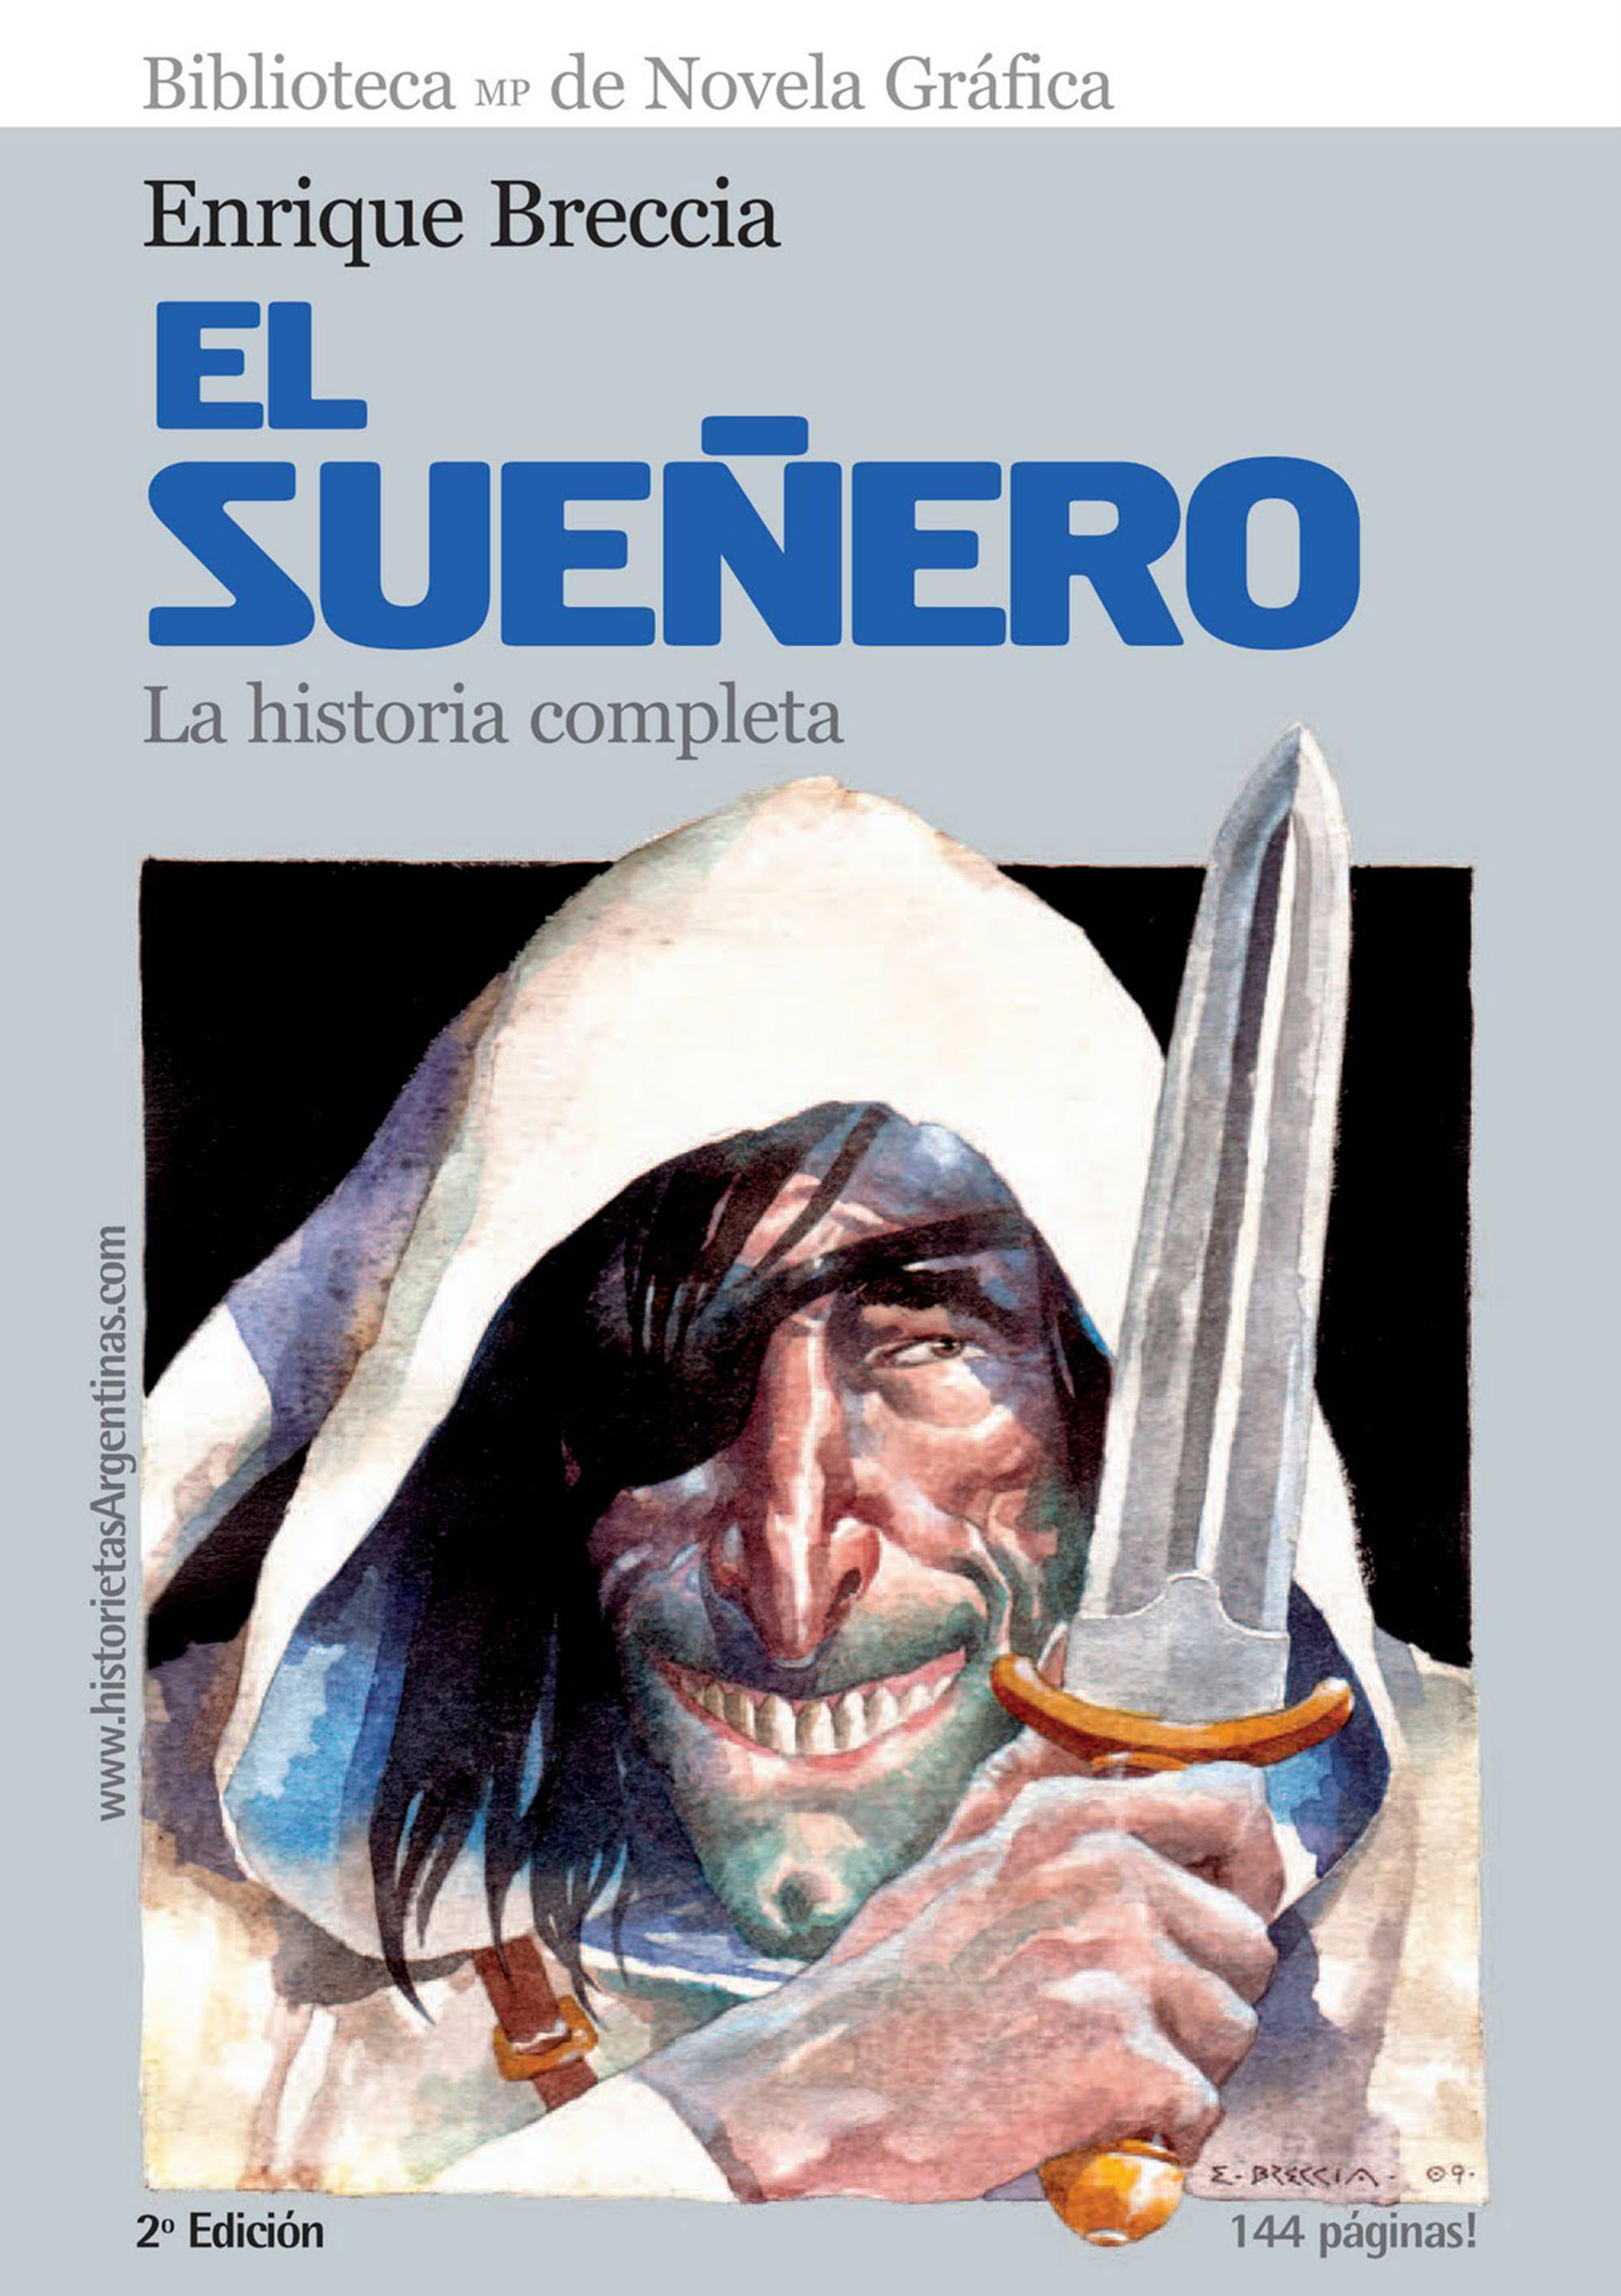 El Sueñero, uno de las grandes creaciones de Enrique Breccia, con guion propio y un personaje icónico